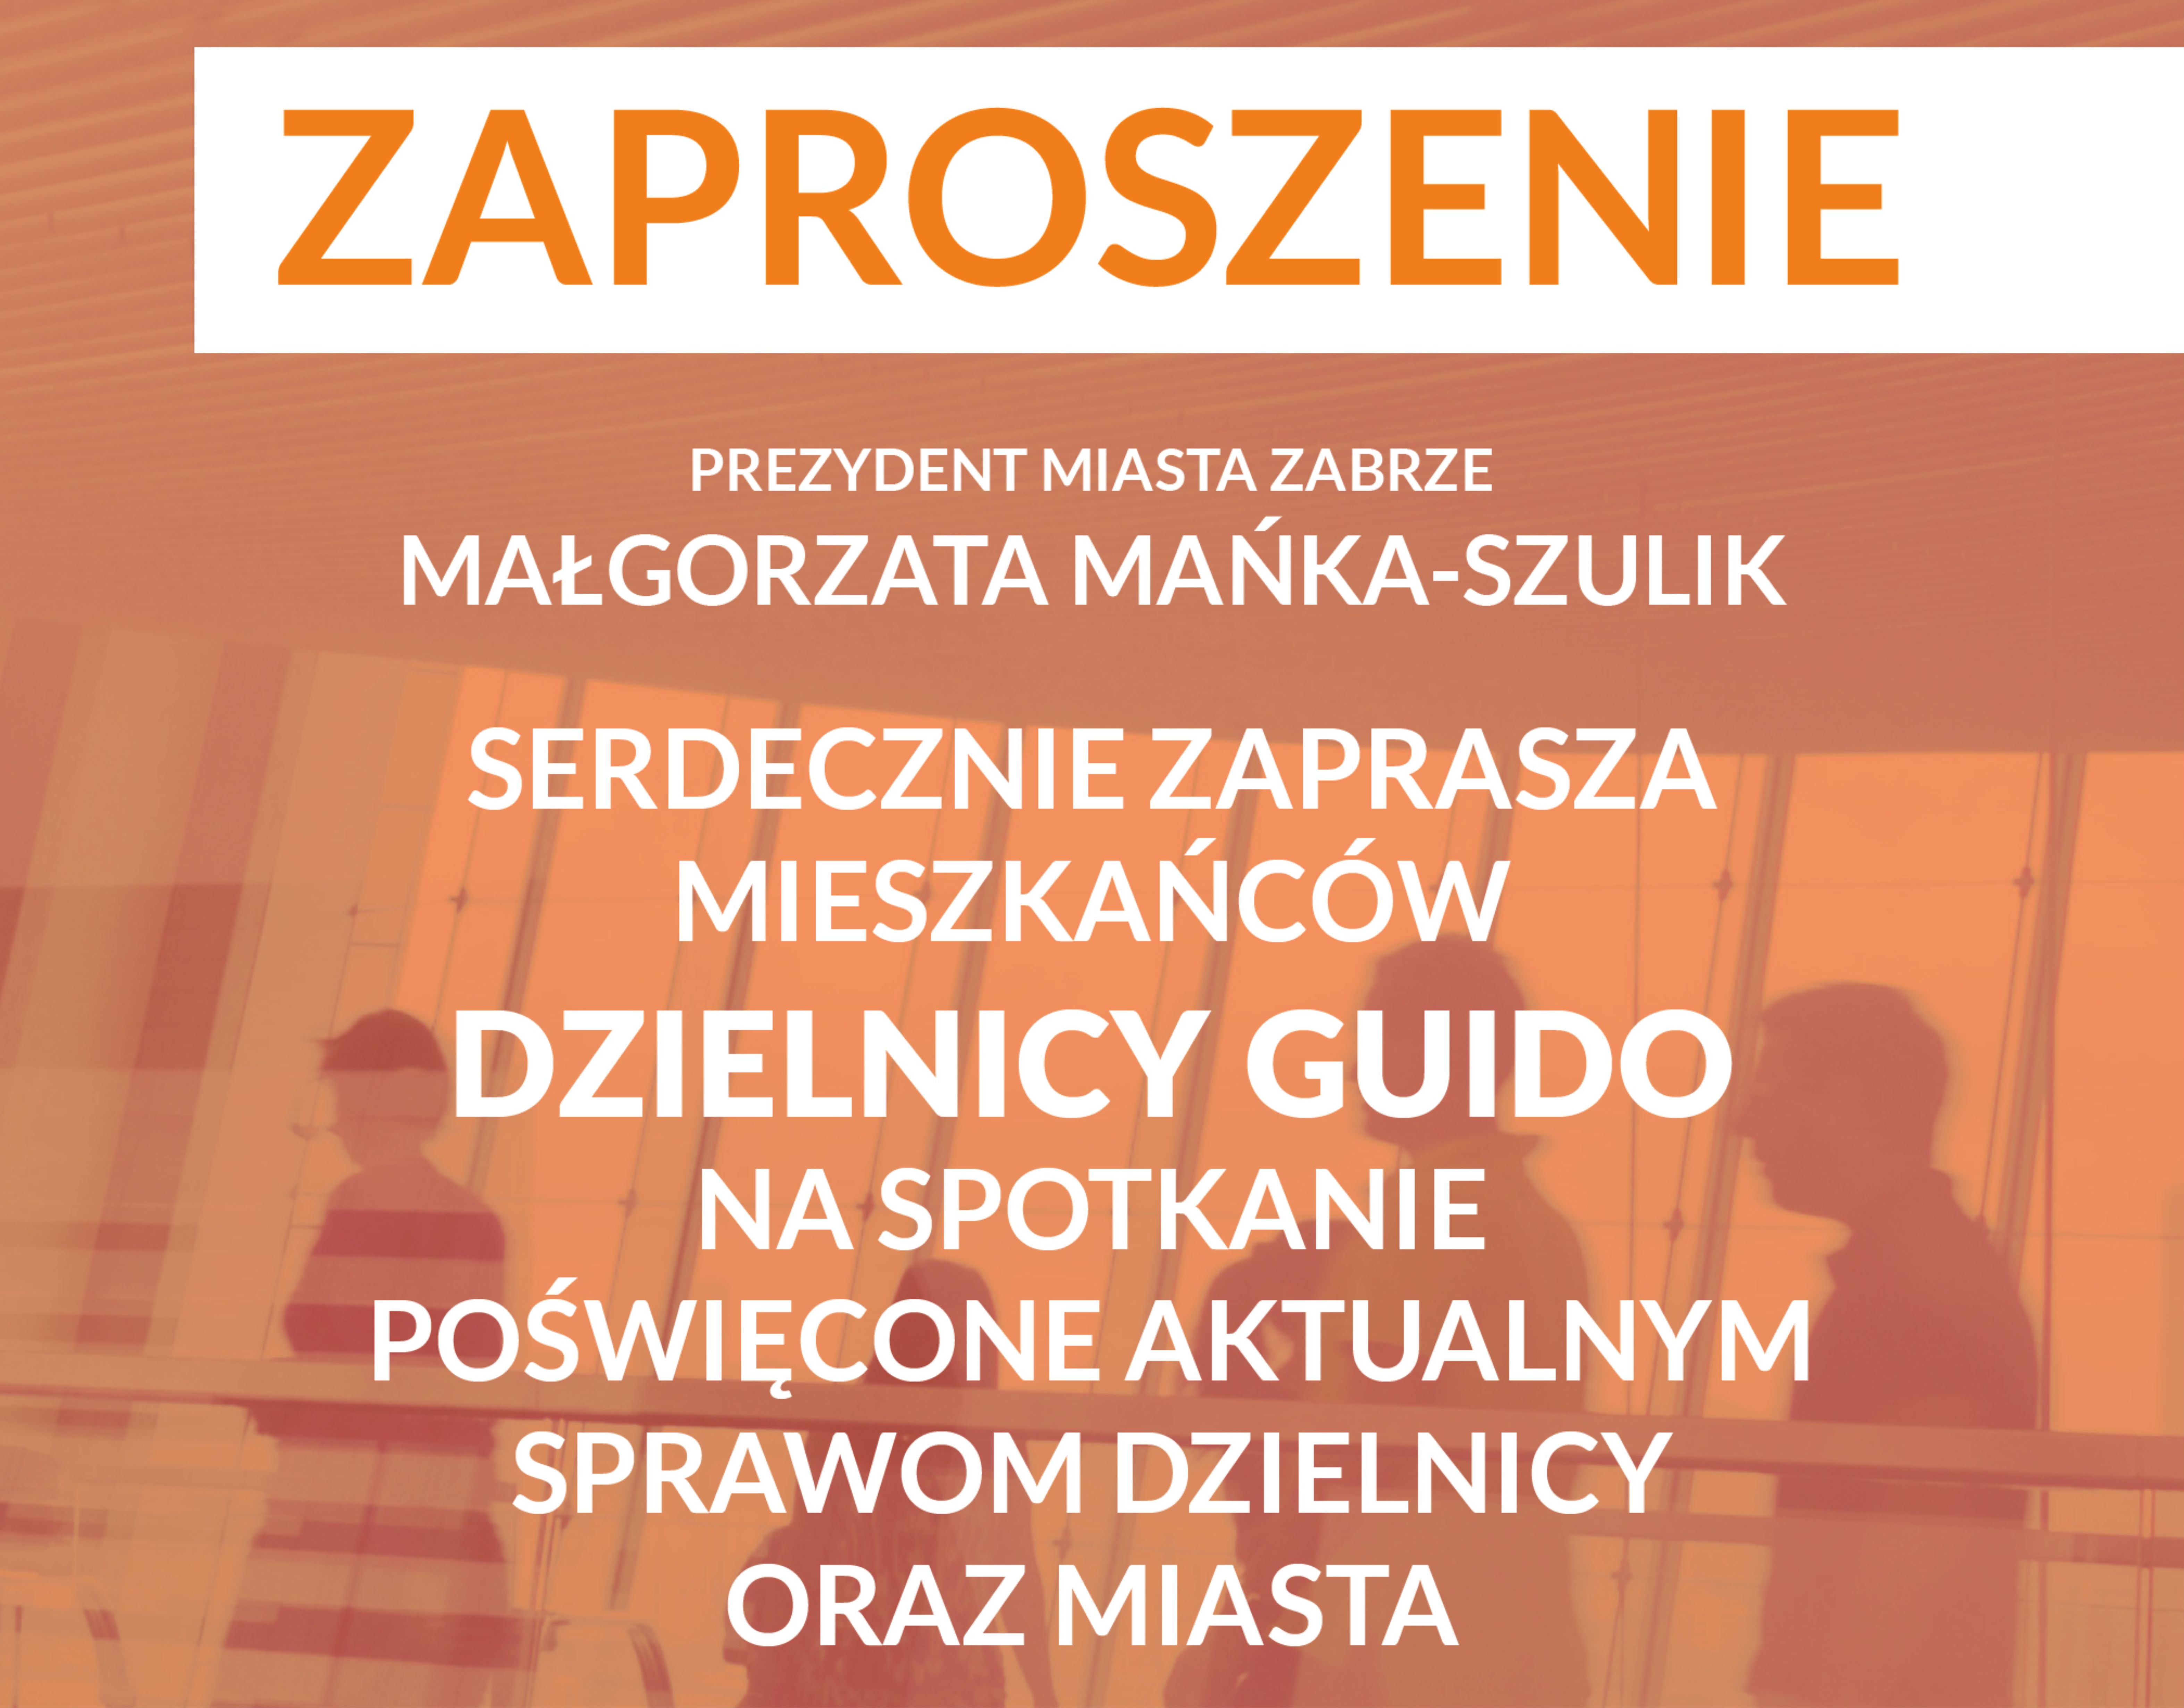 pomarańczowo-brązowy plakat informujący o spotkaniu dla mieszkańców dzielnicy Guido